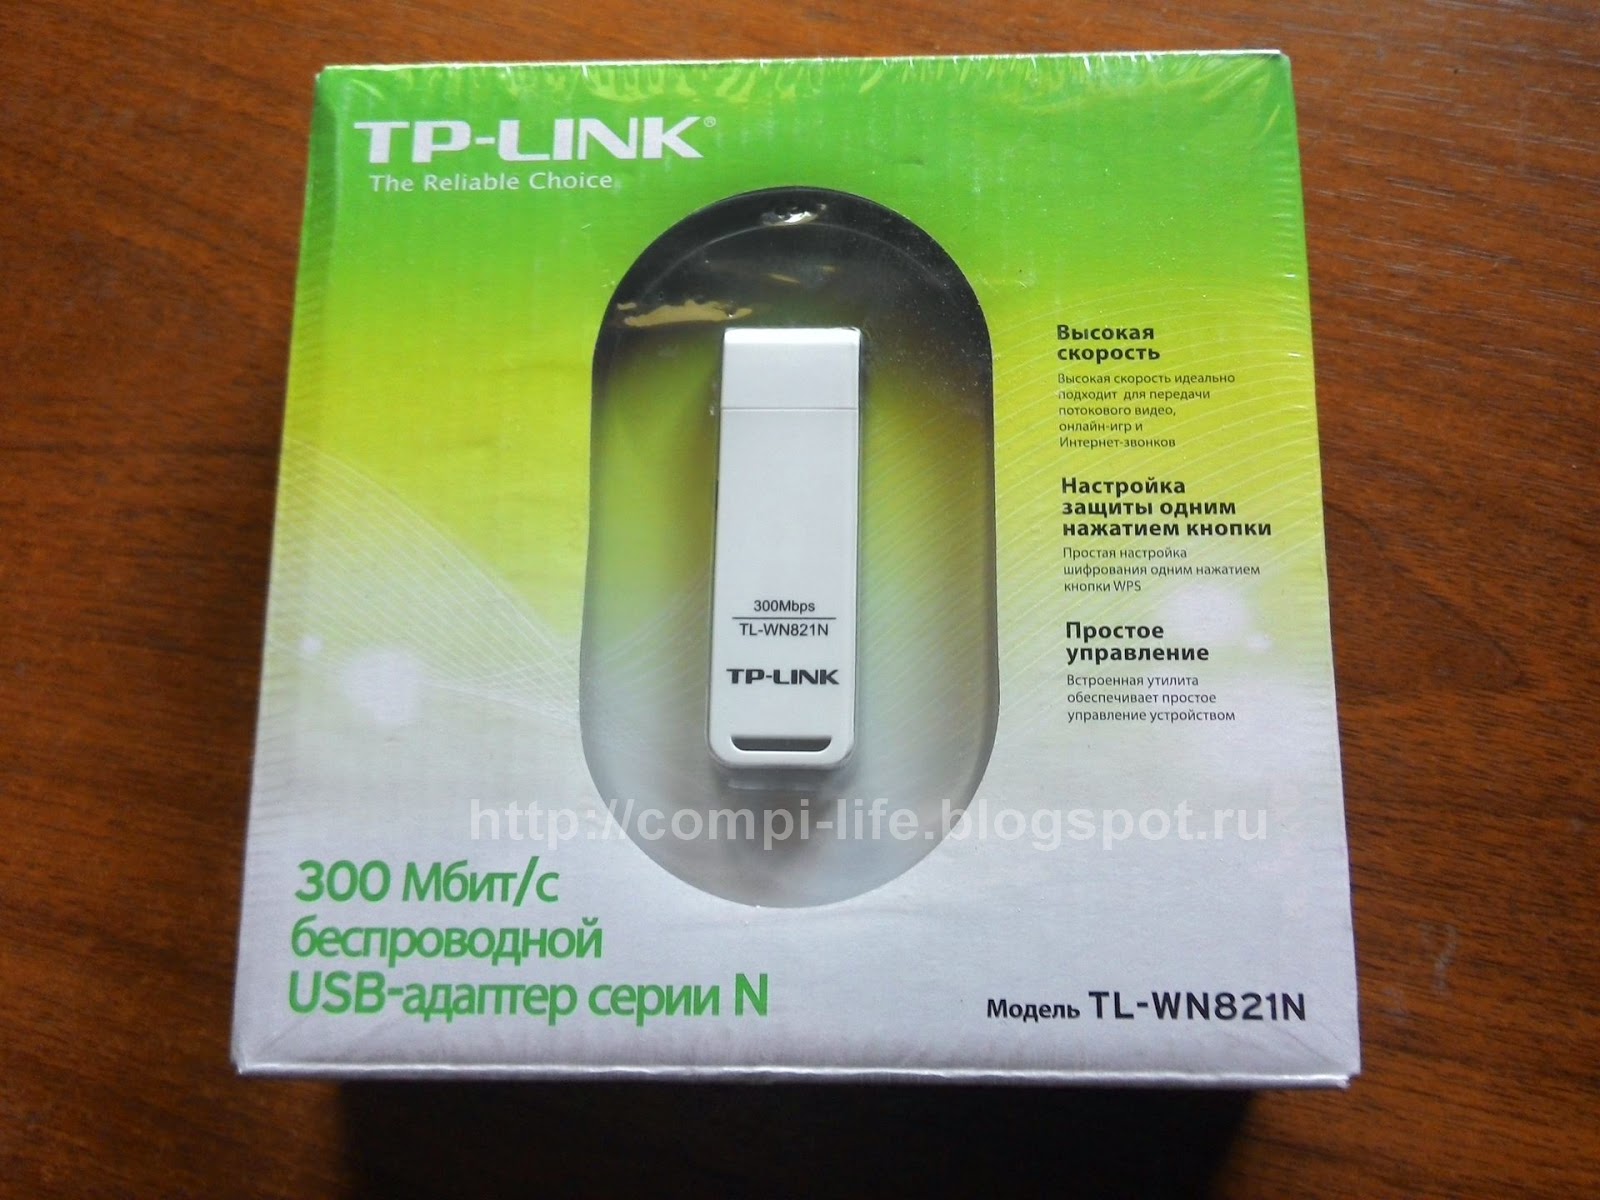 Usb vid 2357. Wi-Fi адаптер TP-link TL-wn821n. Беспроводной USB адаптер TP-link TL-wn821n 300мбит/с стандарта n. TL-wn821n v6. Беспроводной сетевой USB-адаптер TP-link TL-wn821n драйвера.